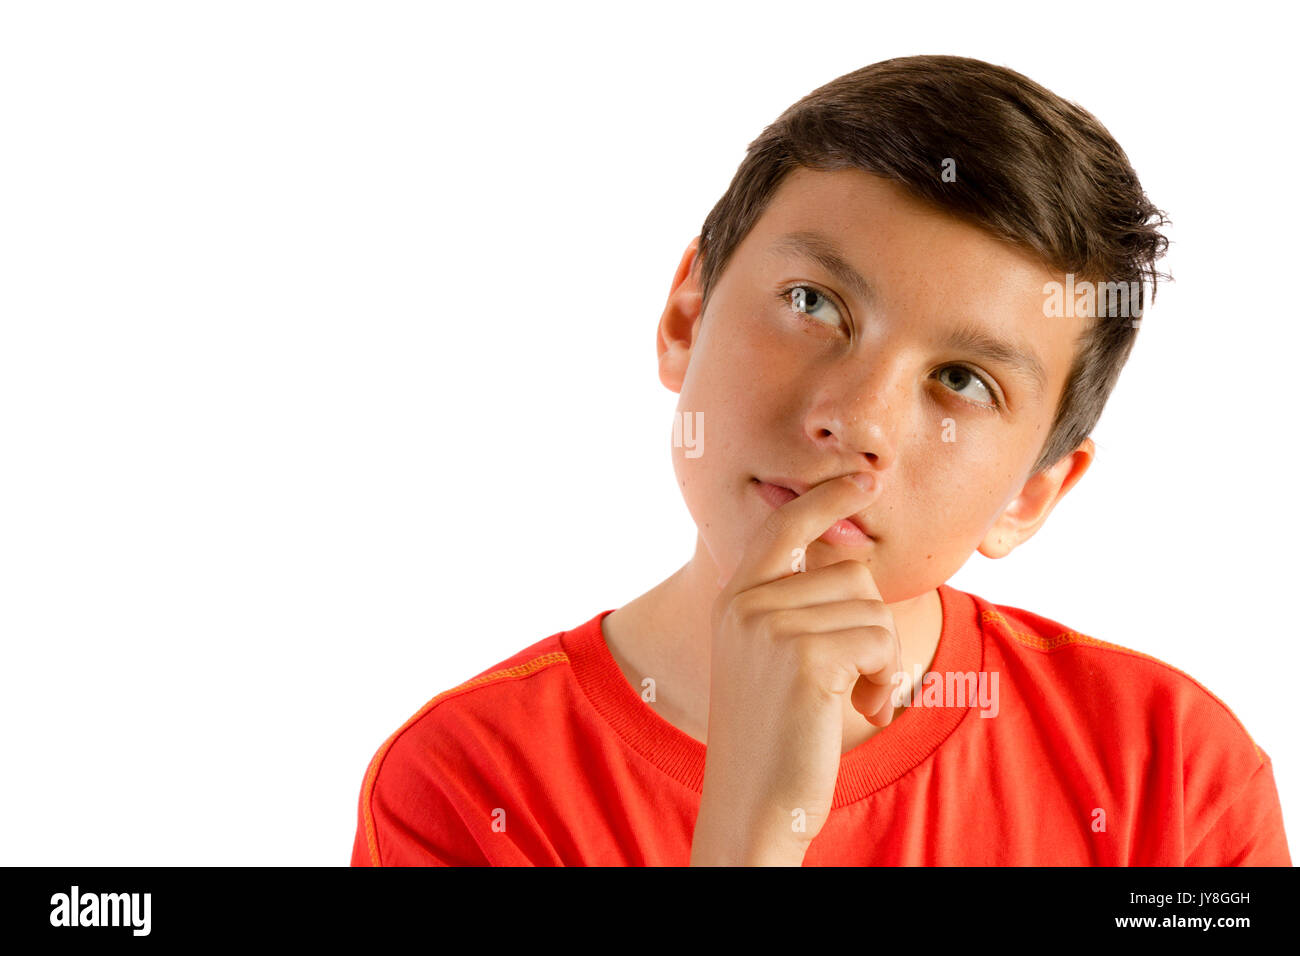 Young teenage boy isolated on white thinking Stock Photo